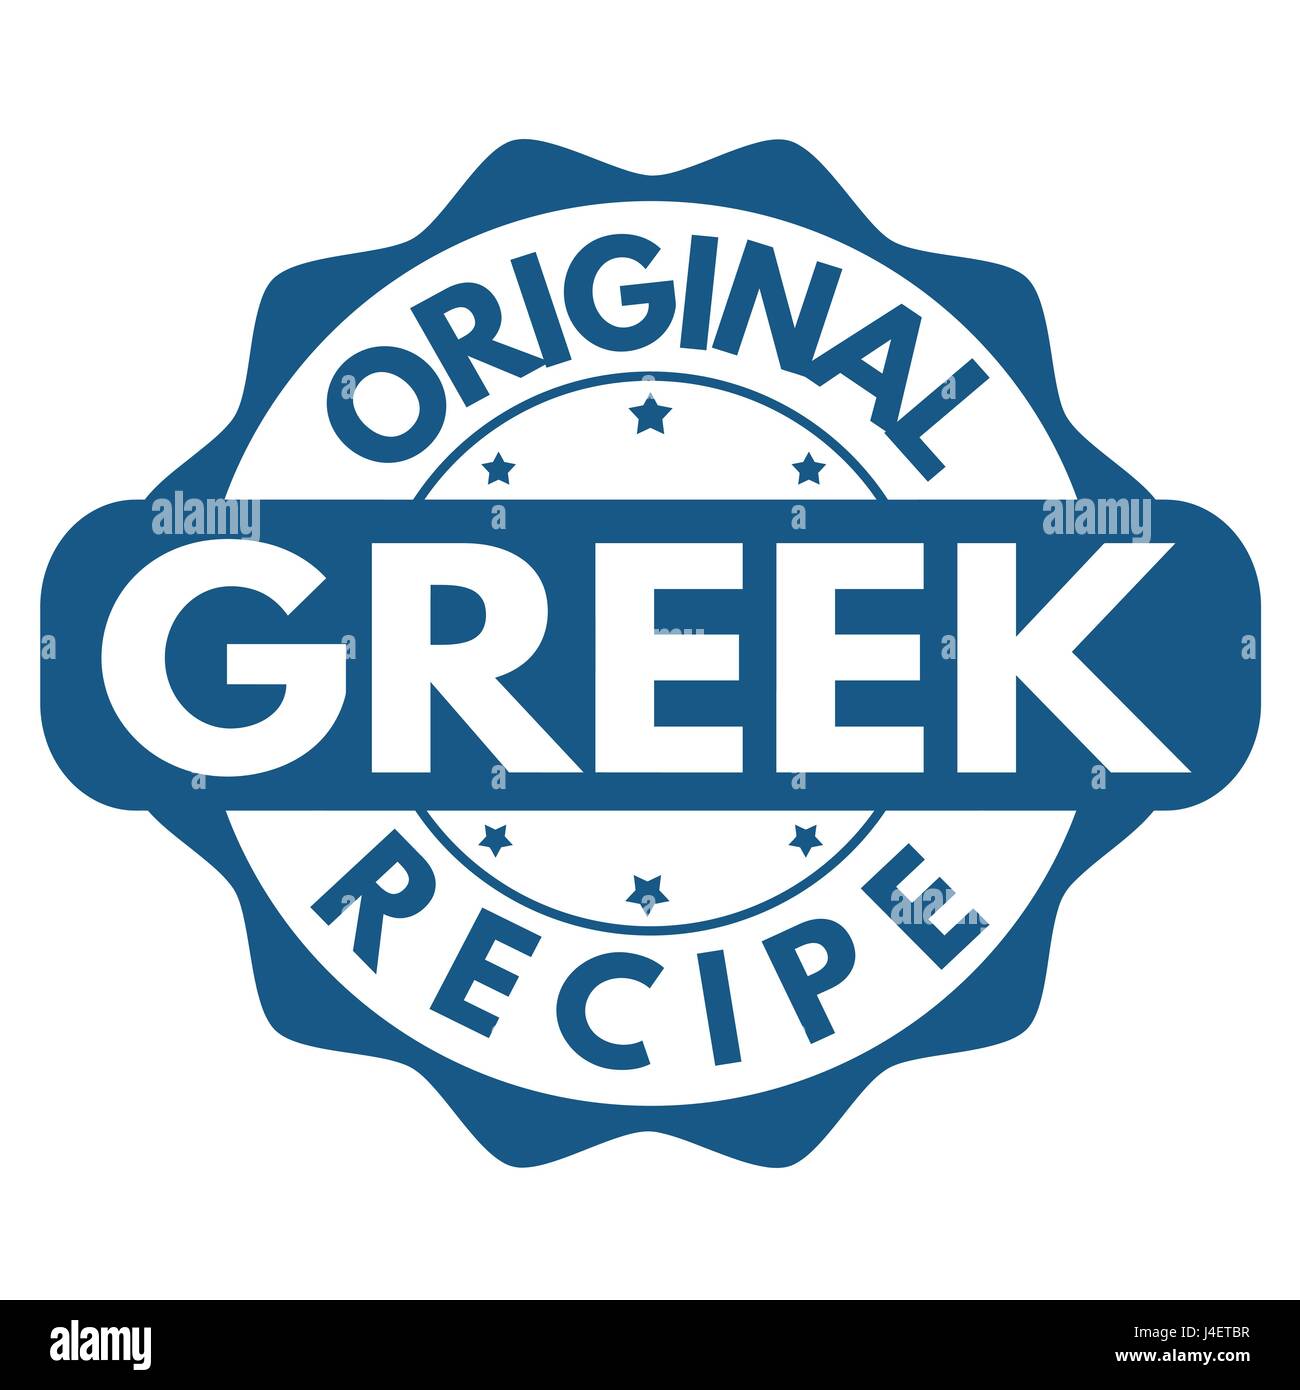 Original griechische Rezept Zeichen oder Stempel auf weißem Hintergrund, Vektor-illustration Stock Vektor